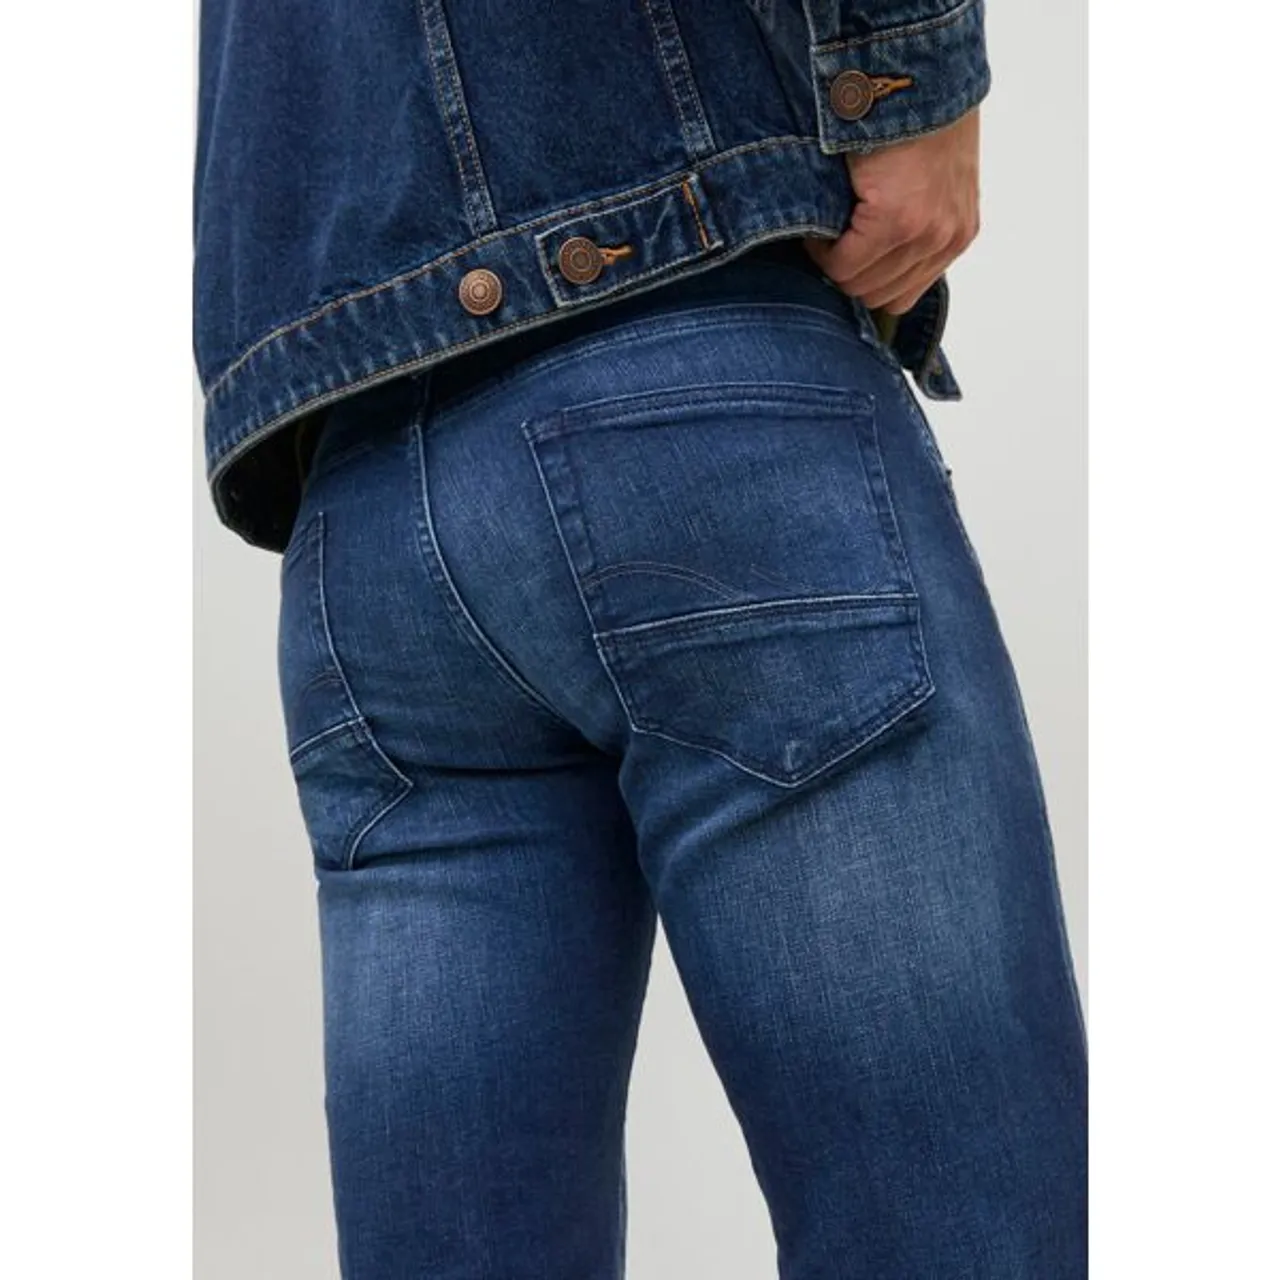 Slim-fit-Jeans JACK & JONES "JJIGLENN JJFOX JOS 047 50SPS" Gr. 29, Länge 32, blau (dark, blue, denim) Herren Jeans Slim Fit